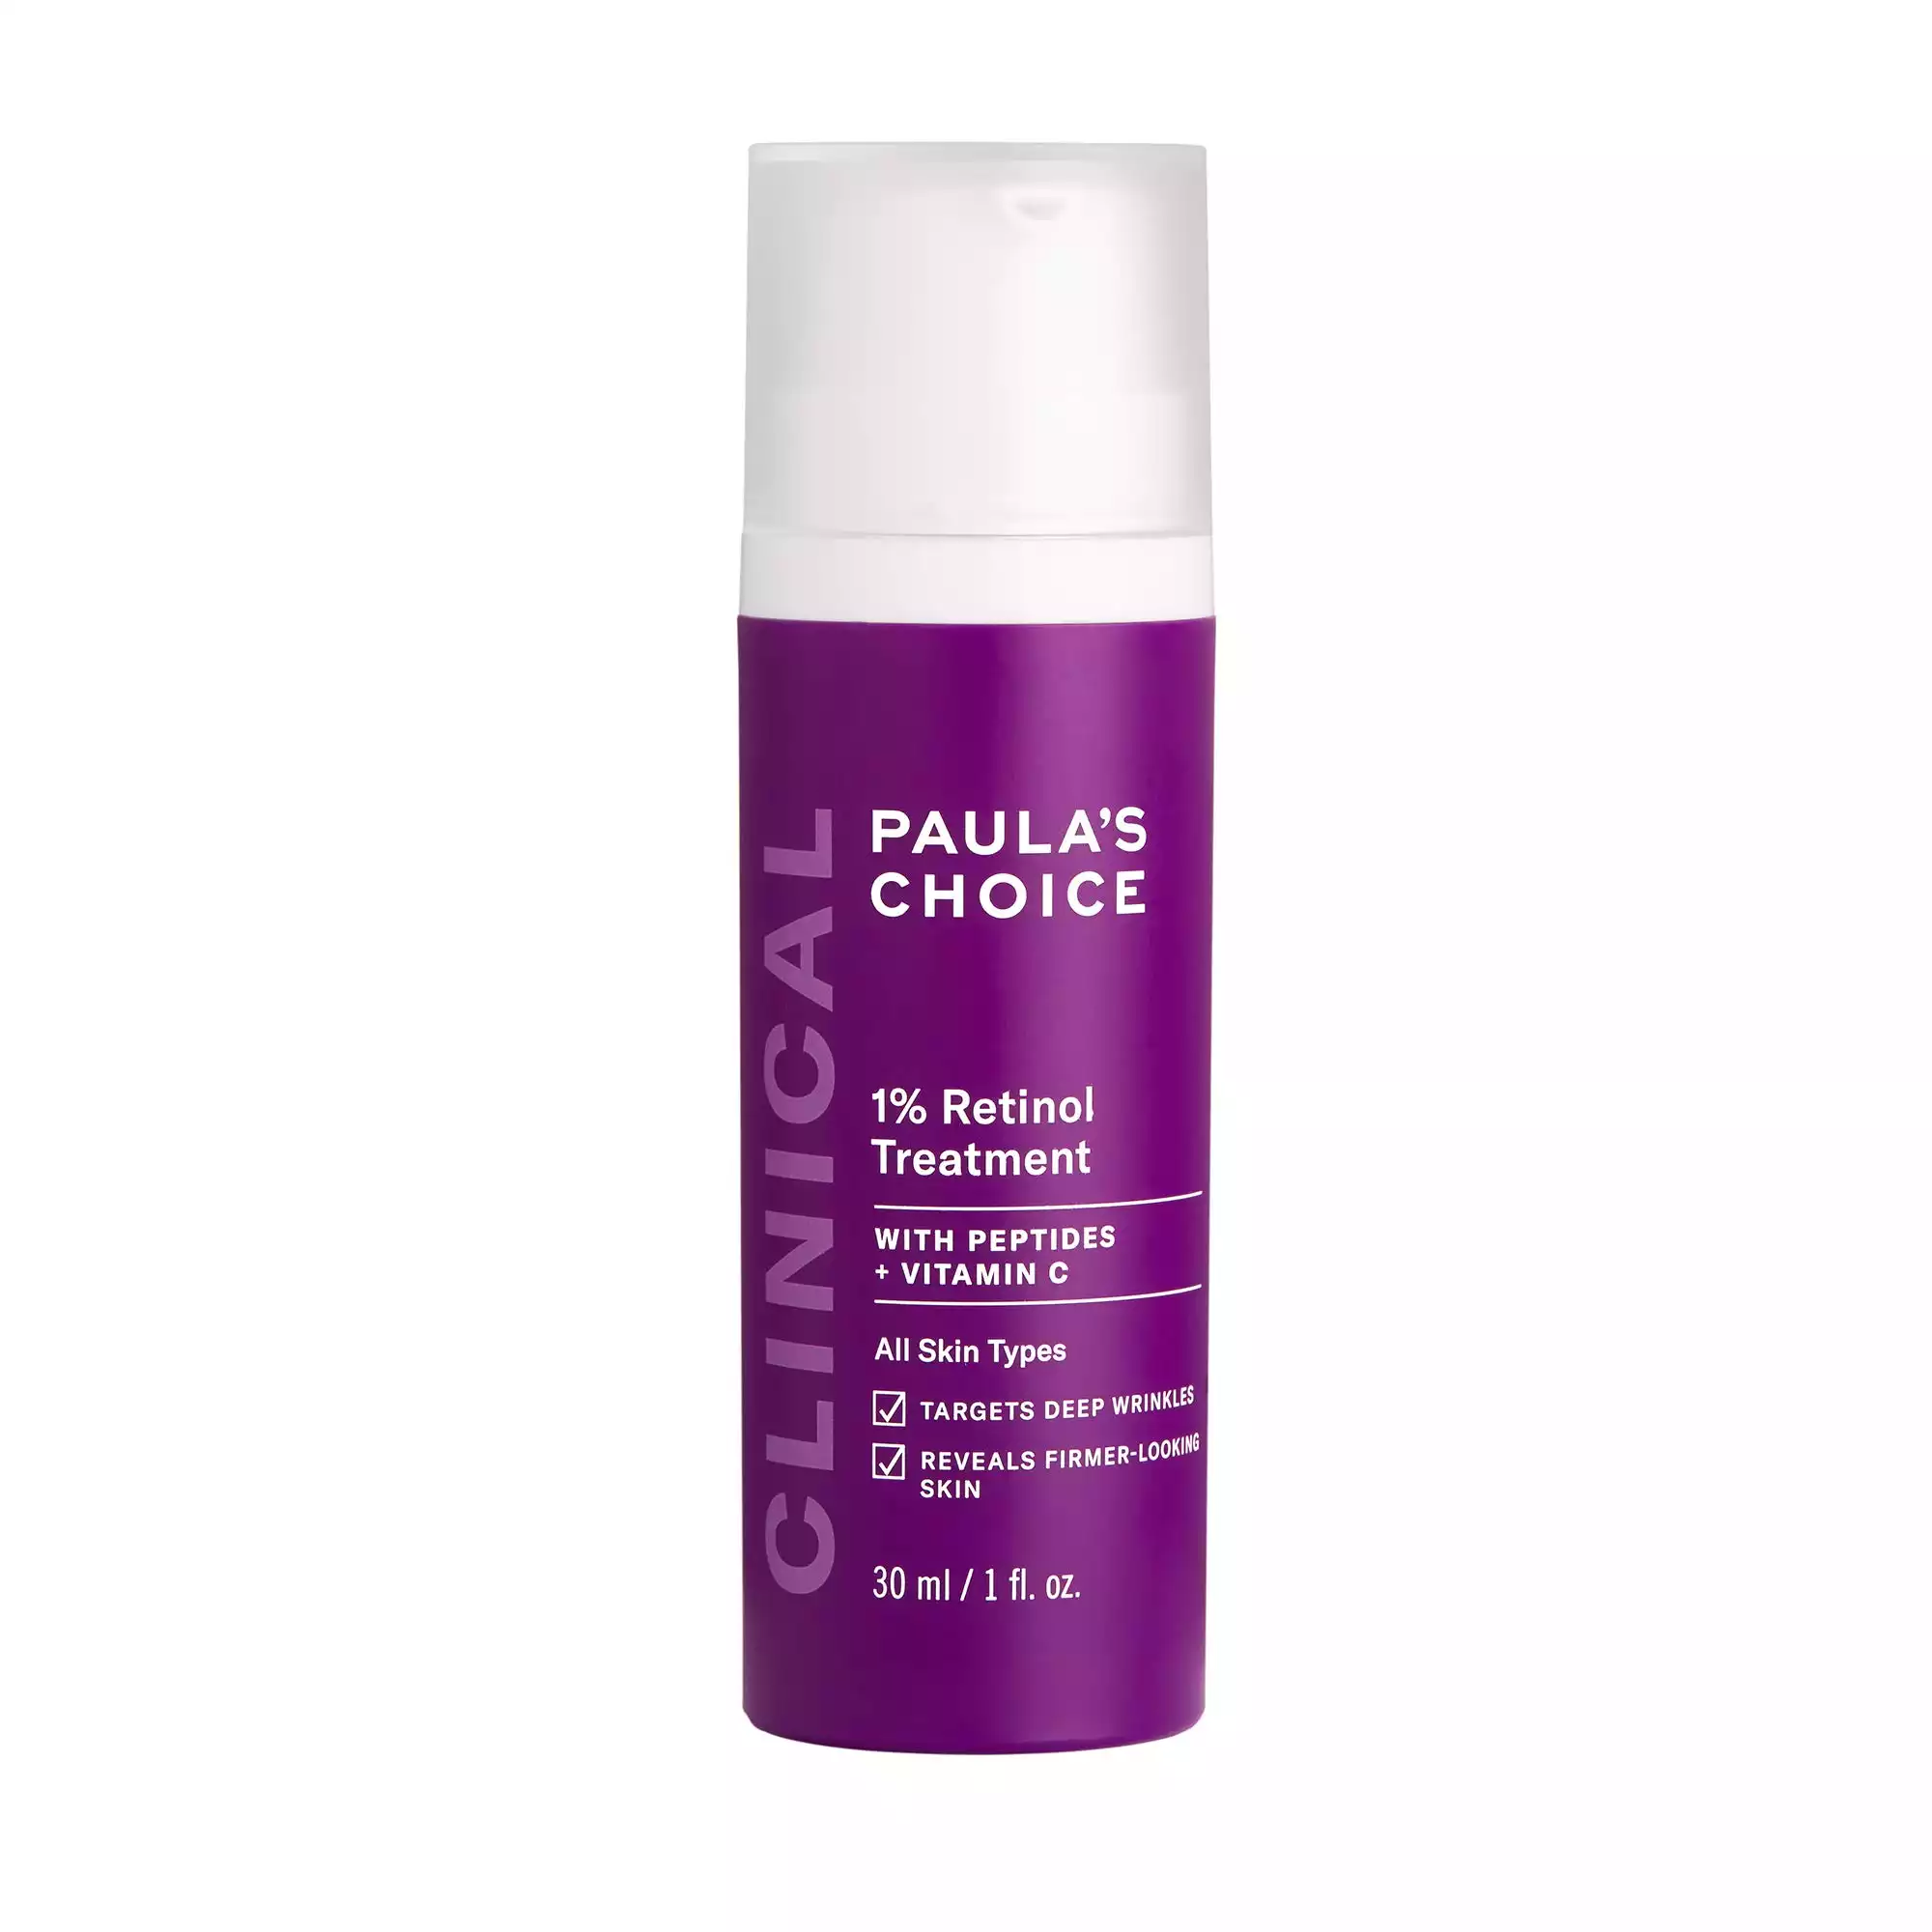 Paula's Choice CLINICAL 1% Retinol Treatment Cream